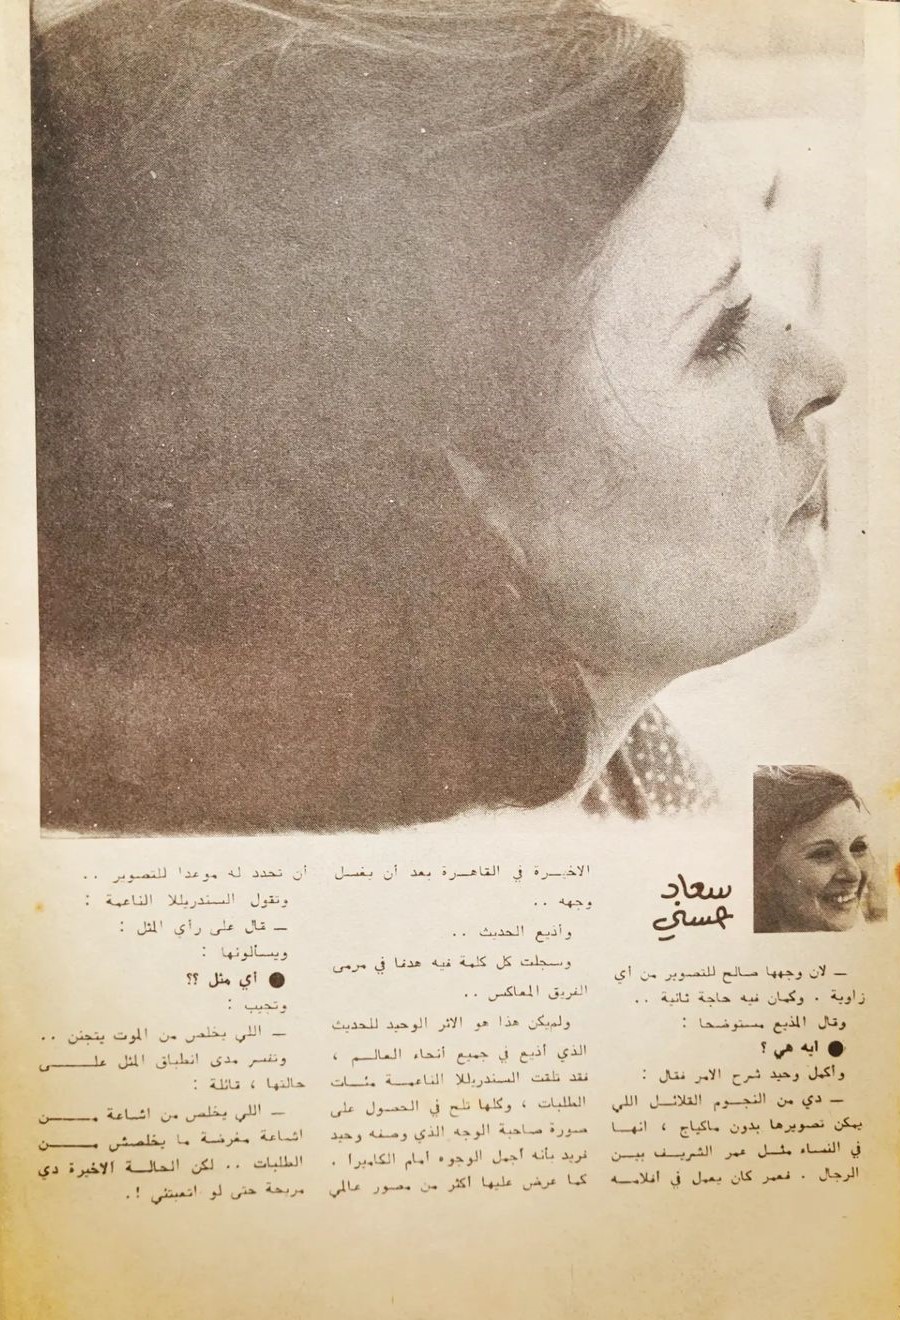 مقال صحفي : أي سر يبحث عنه المصورون .. في وجه سعاد حسني 1976 م 447